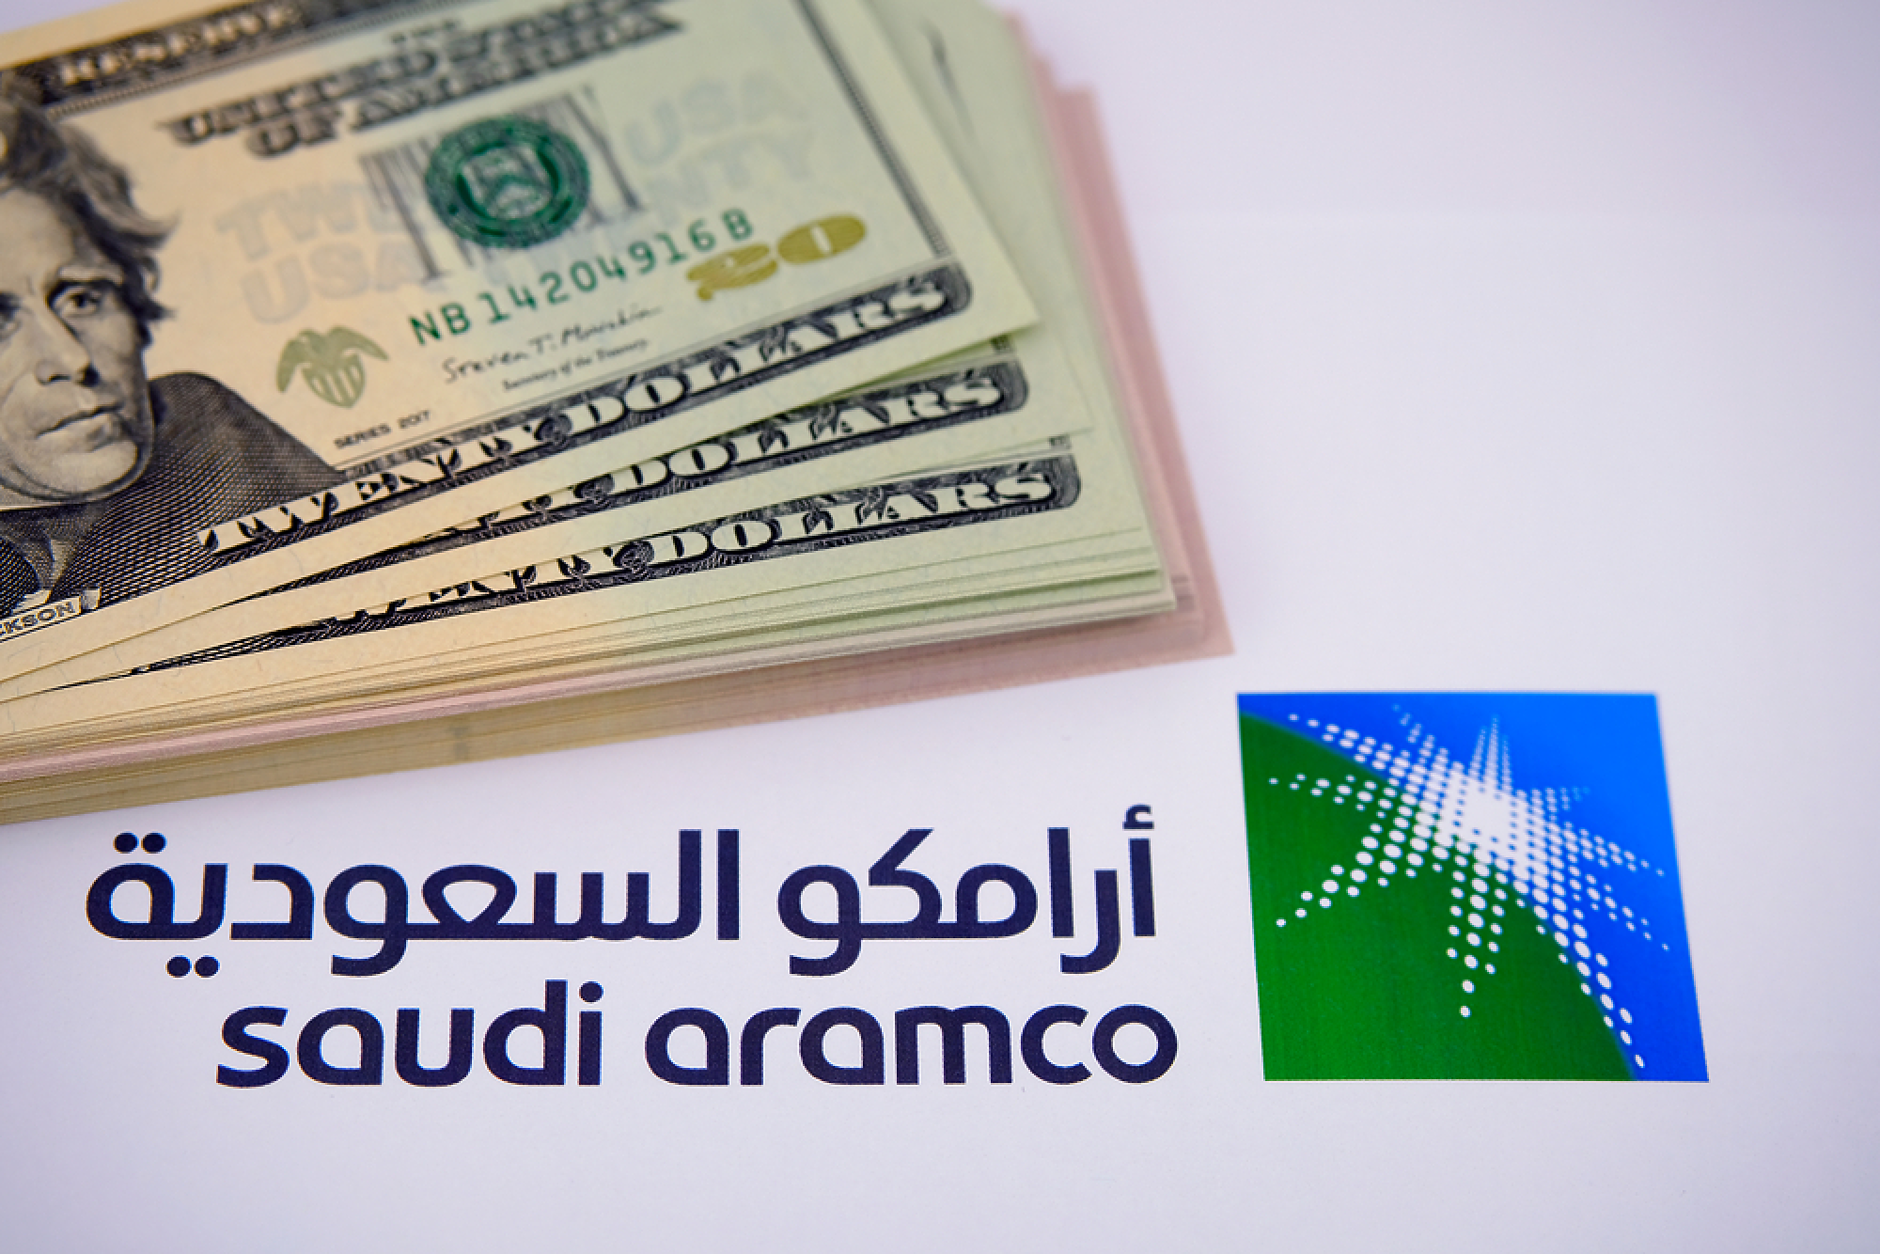 Печалбата на саудитската нефтена компания Saudi Aramco се сви поради по-ниските цени на петрола